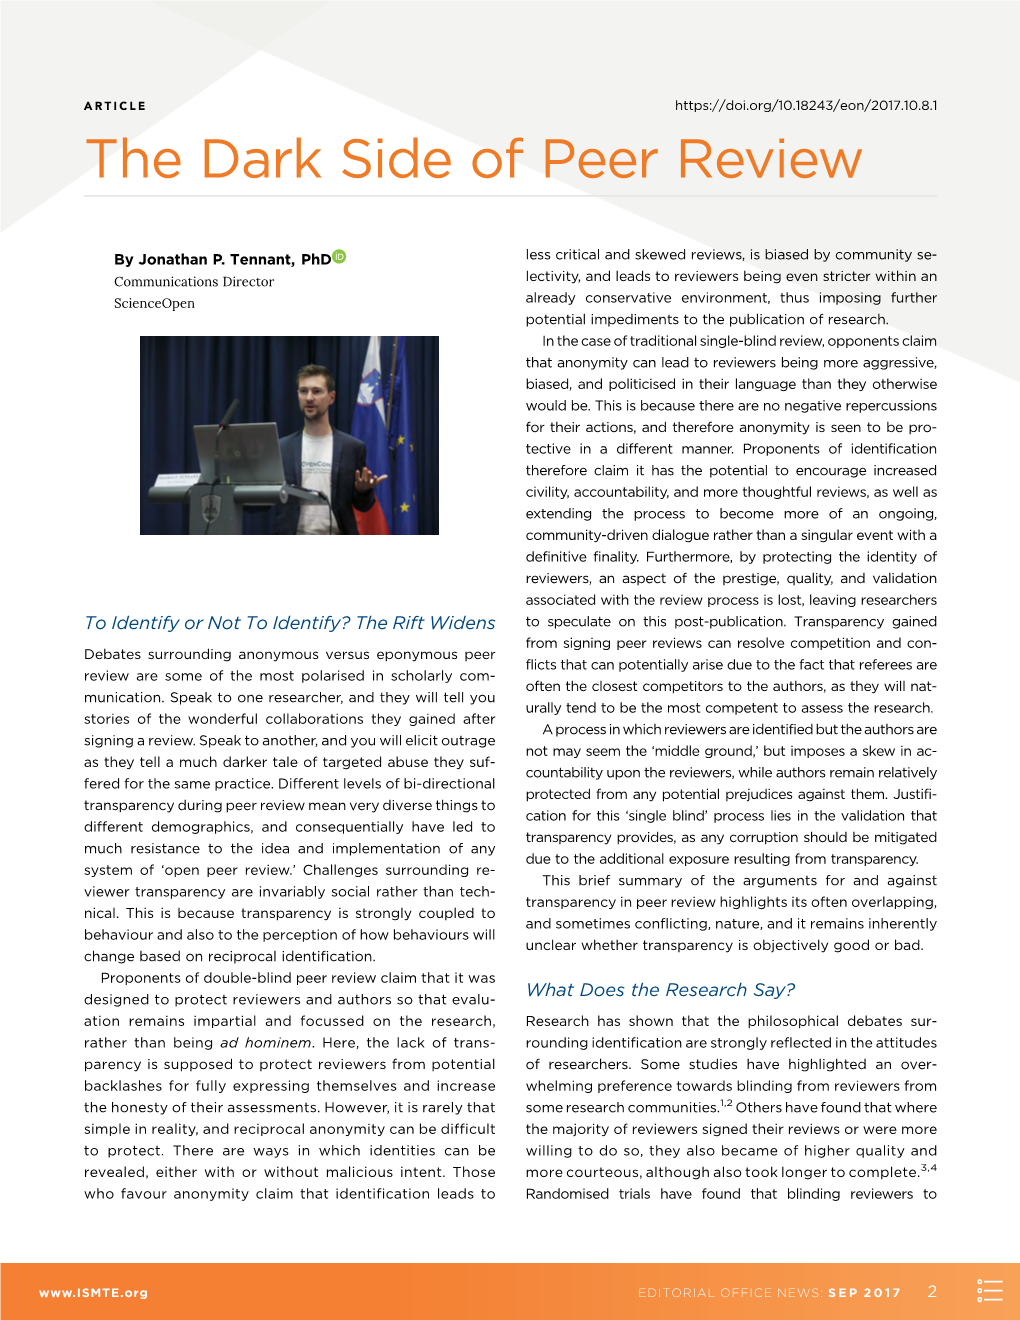 The Dark Side of Peer Review